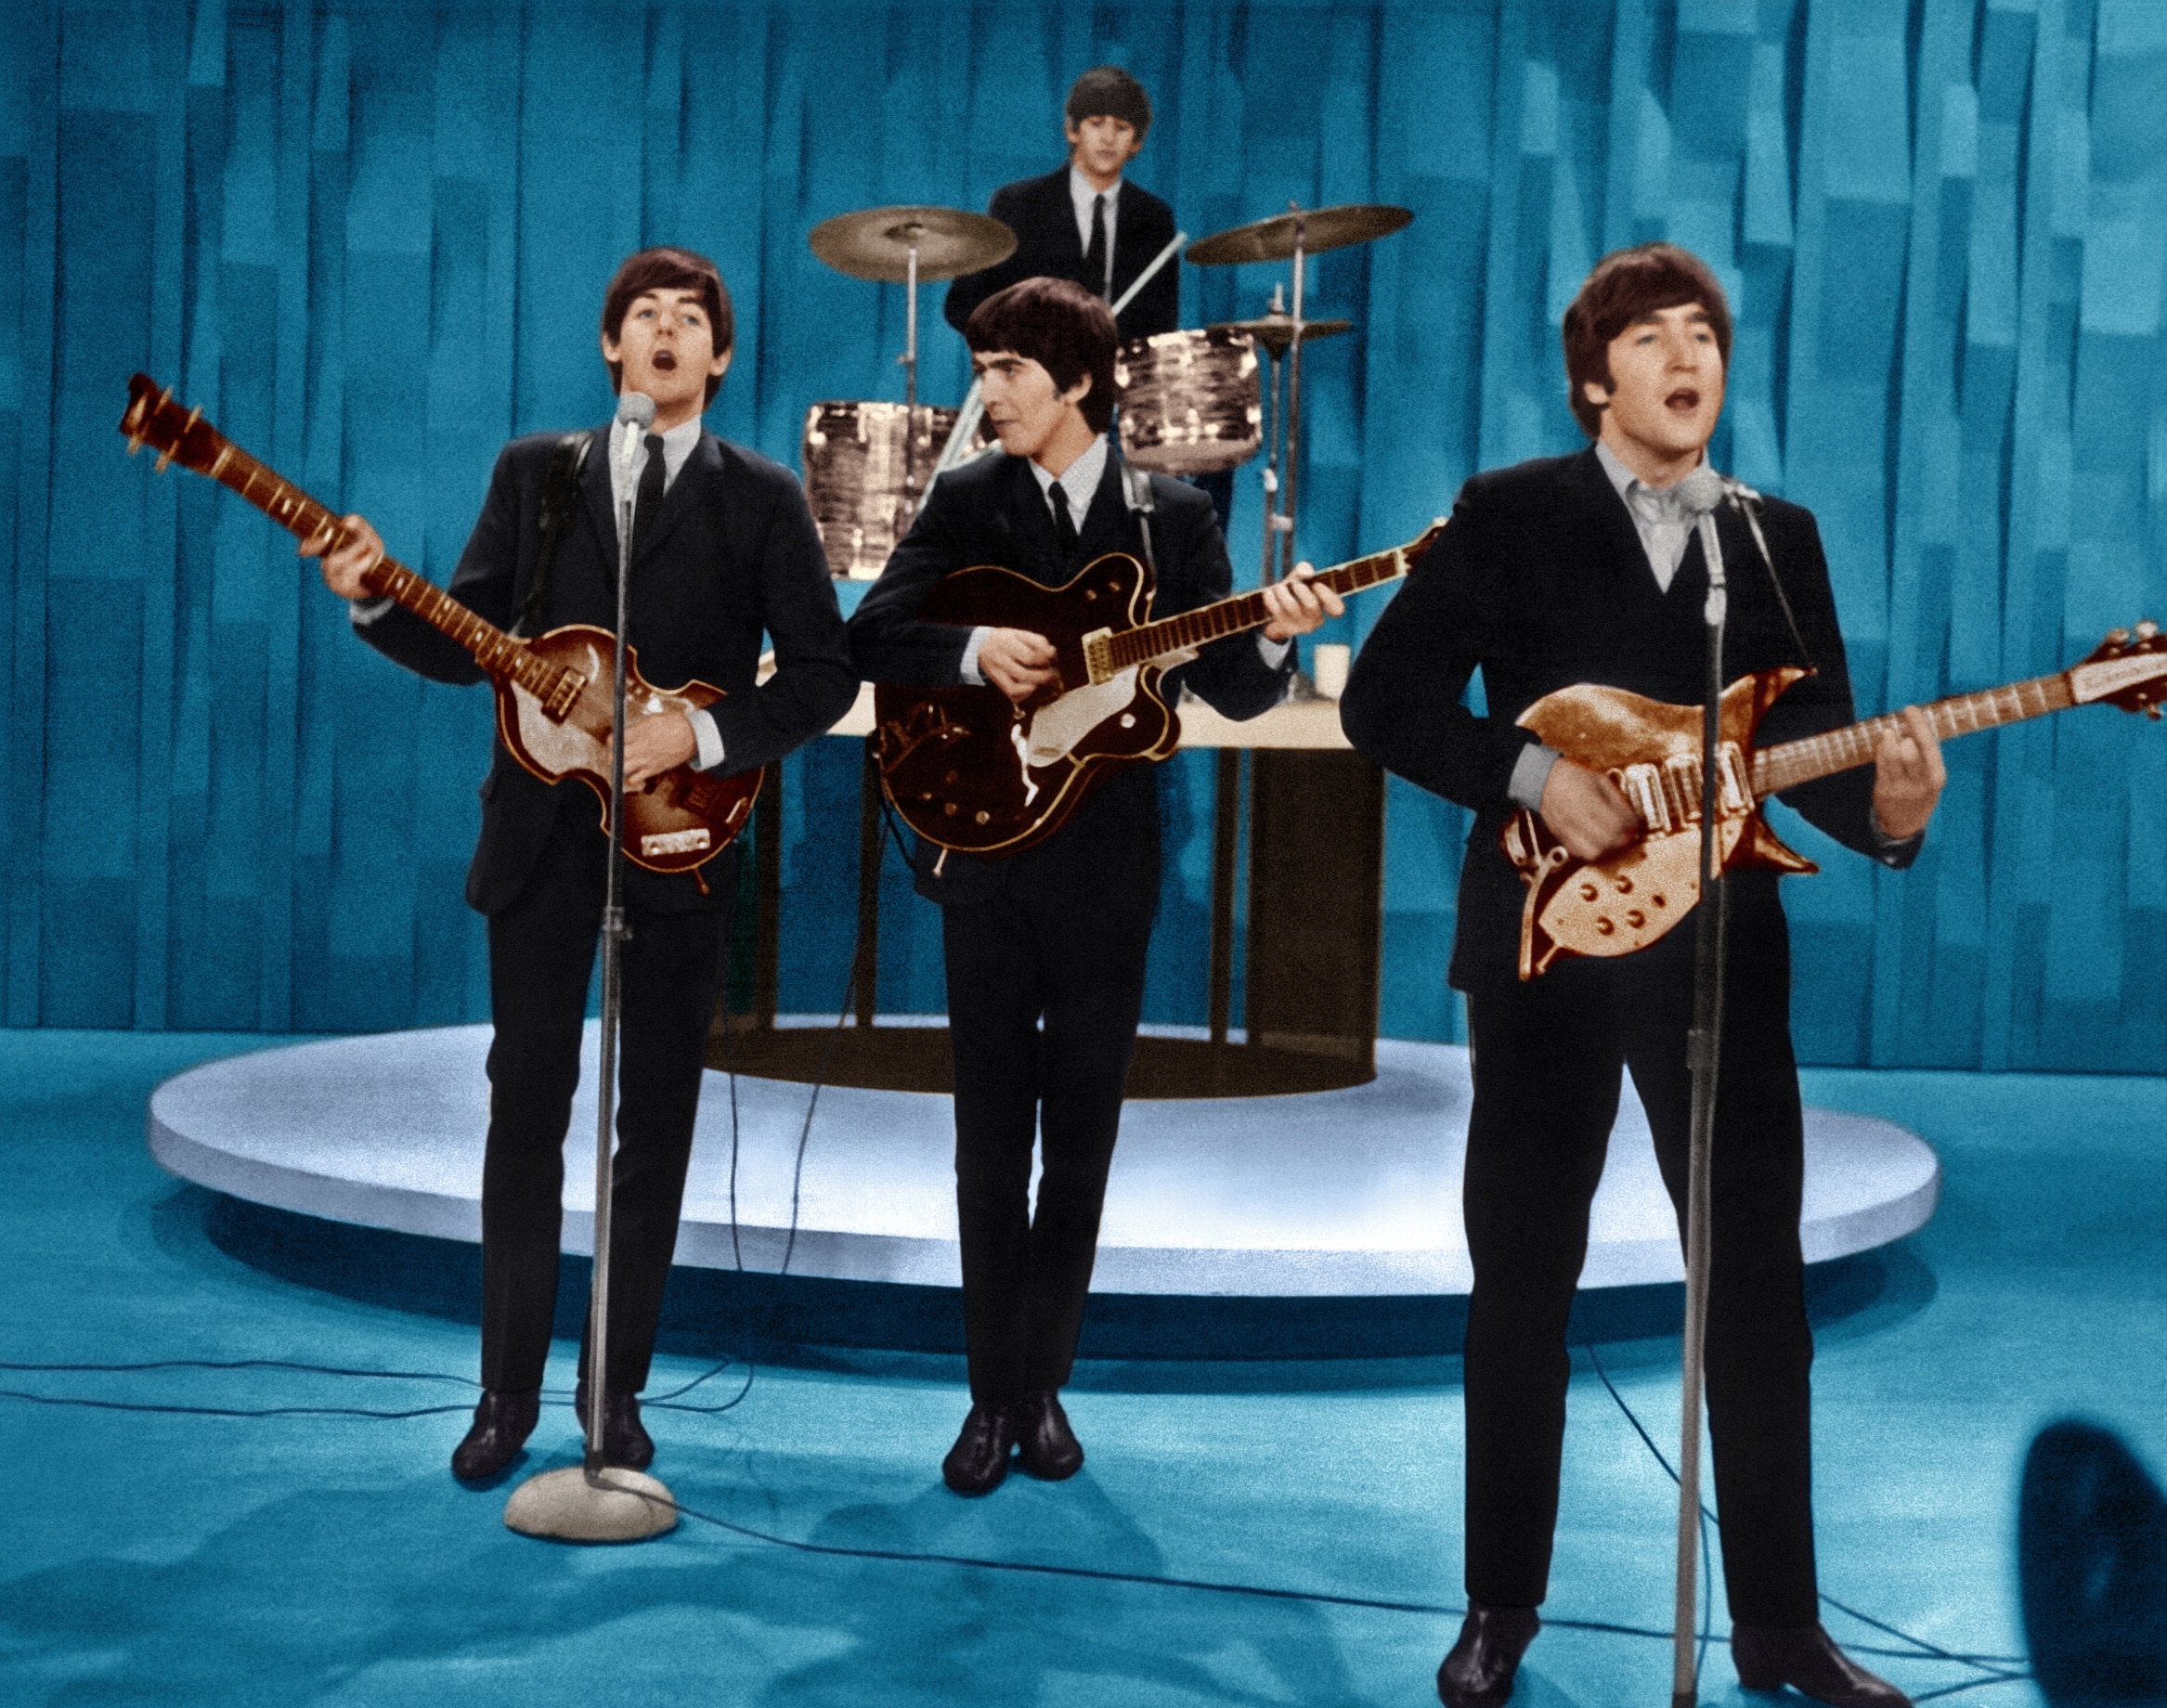 THE ED SULLIVAN SHOW, The Beatles (from left: Paul McCartney, Ringo Starr, George Harrison, John Lennon)